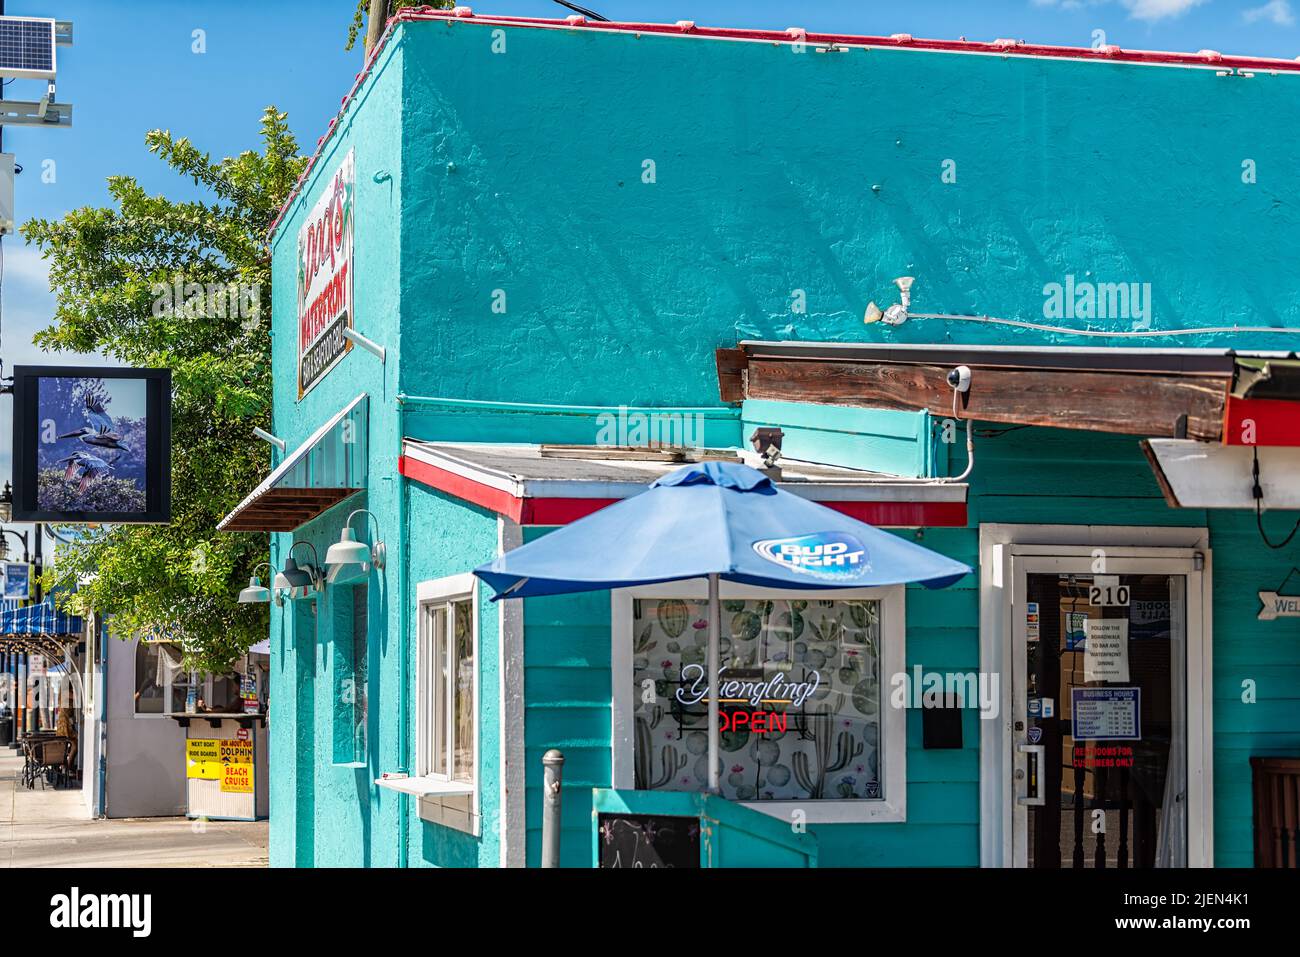 Tarpon Springs, EE.UU. - 4 de octubre de 2021: Colorida arquitectura azul turquesa en la pequeña calle griega europea de la ciudad en Florida signo de muelle frente al mar Foto de stock